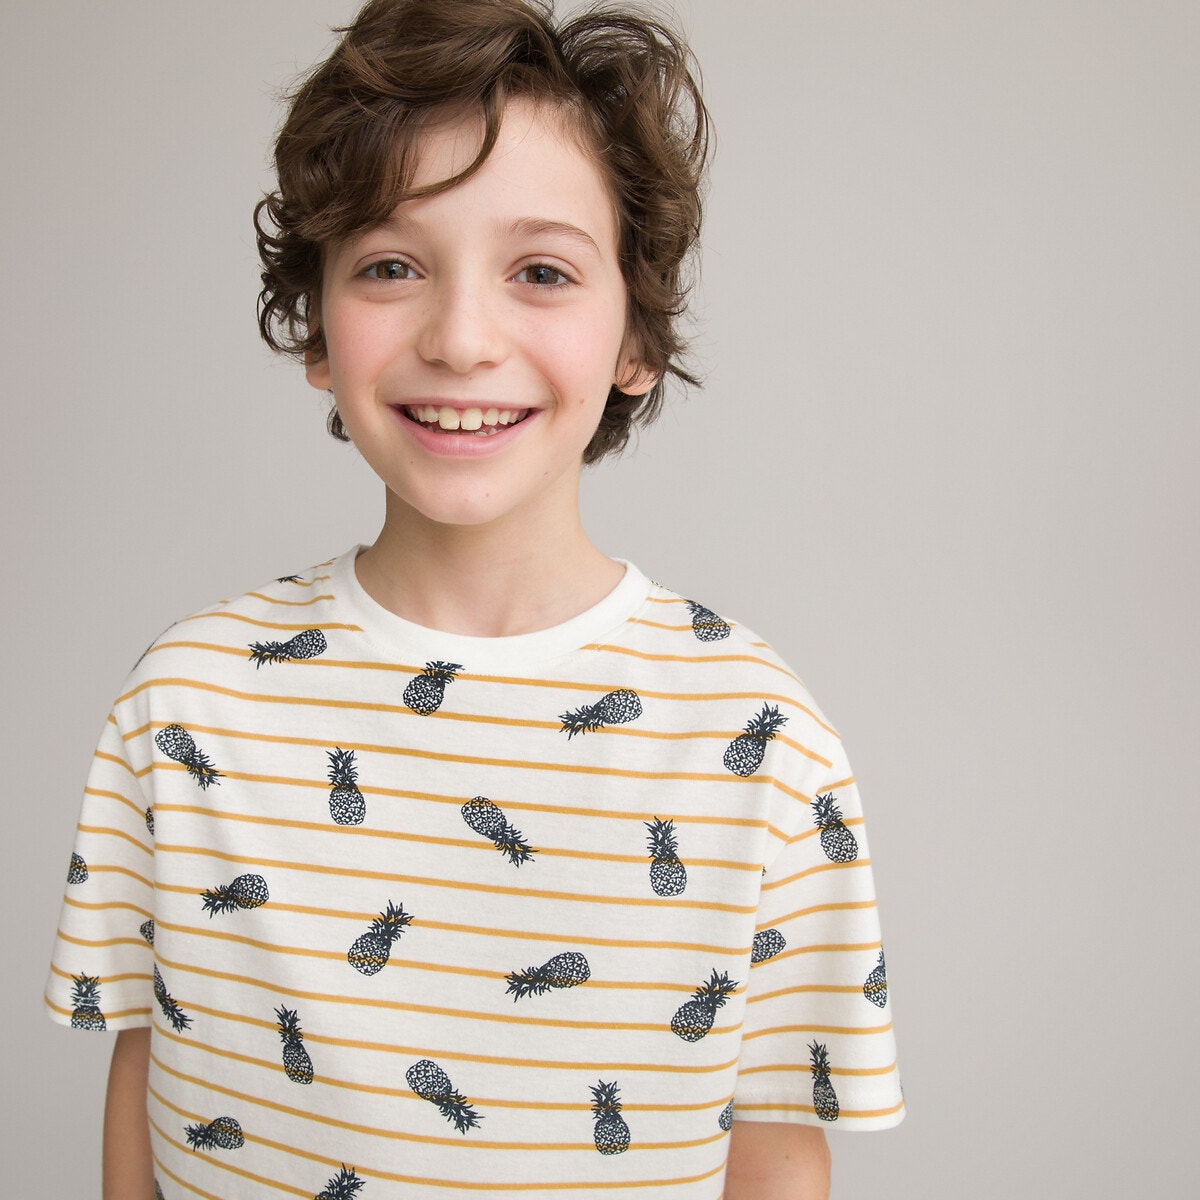 Ριγέ T-shirt με μοτίβο ανανάδες από οργανικό βαμβάκι, 3-12 ετών